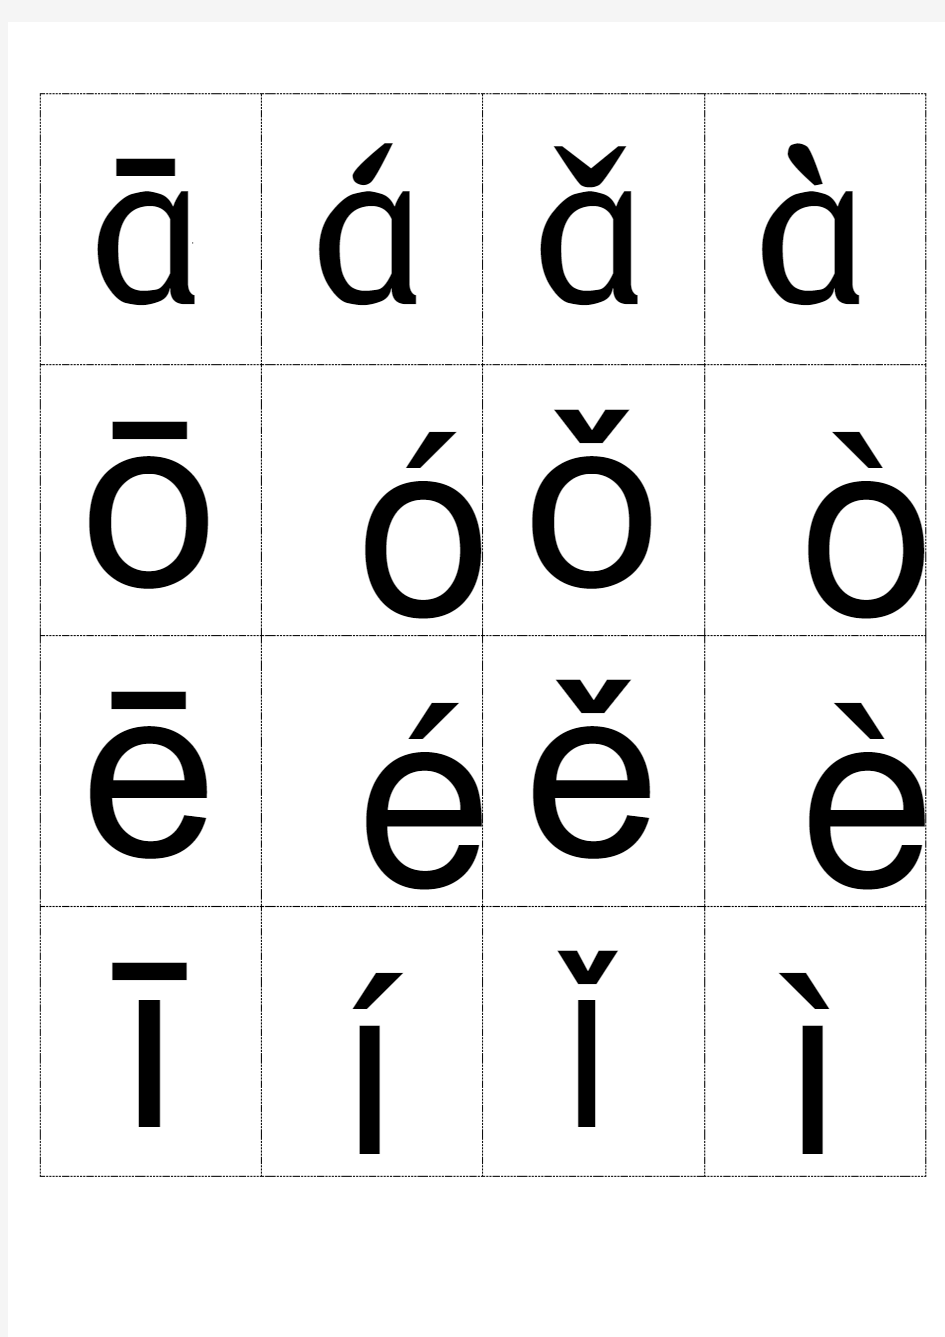 小学汉语拼音字母表韵母四声版本